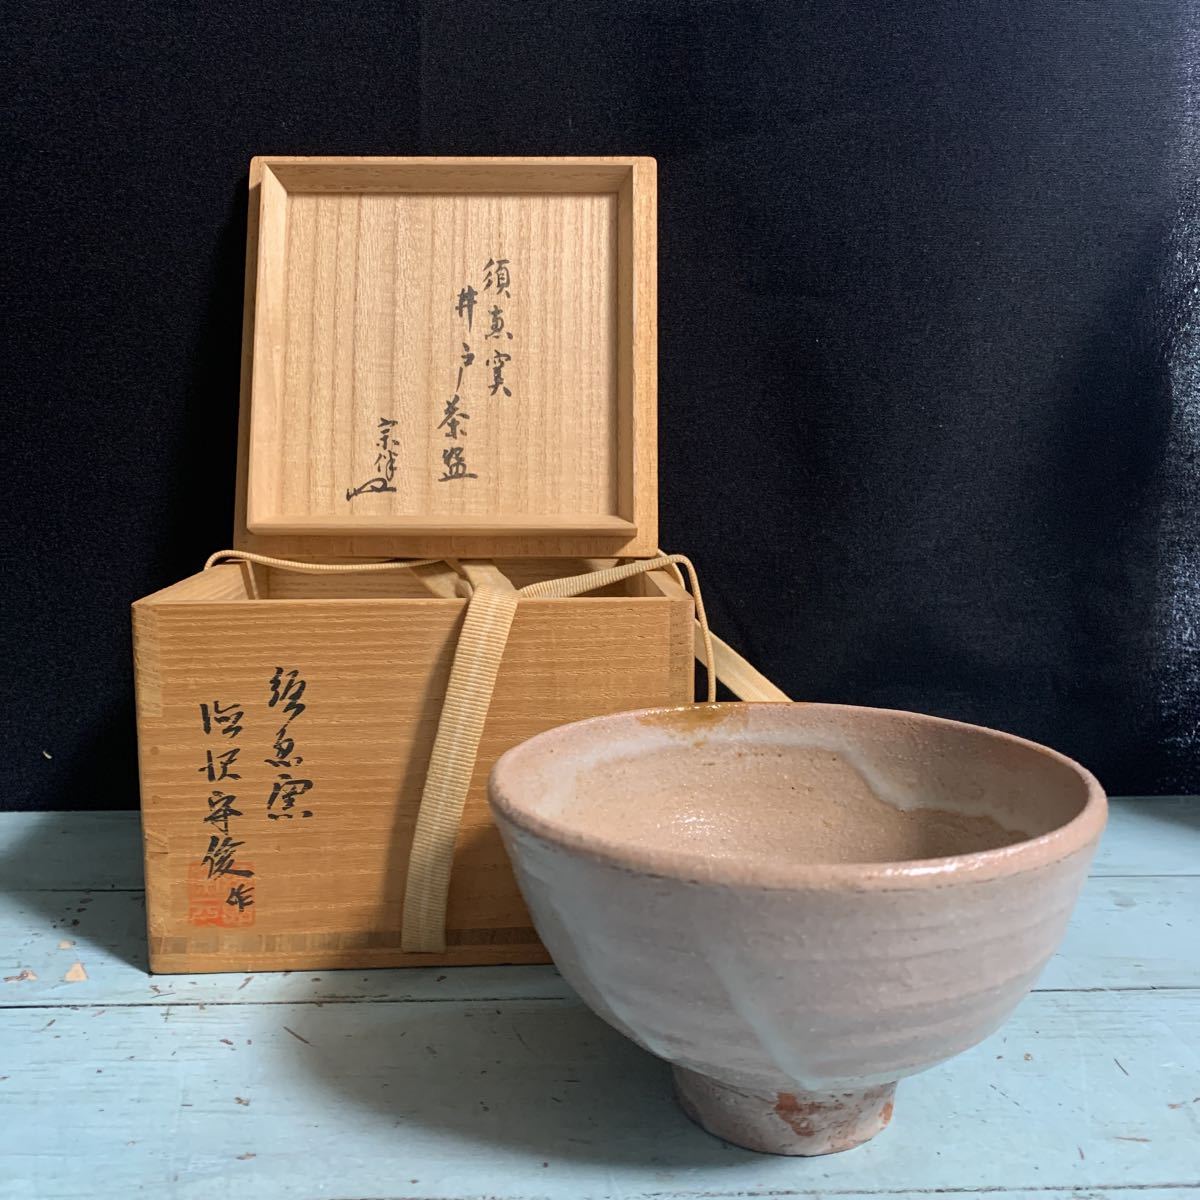 須恵窯 徳沢守俊 井茶碗 茶碗 (8123)